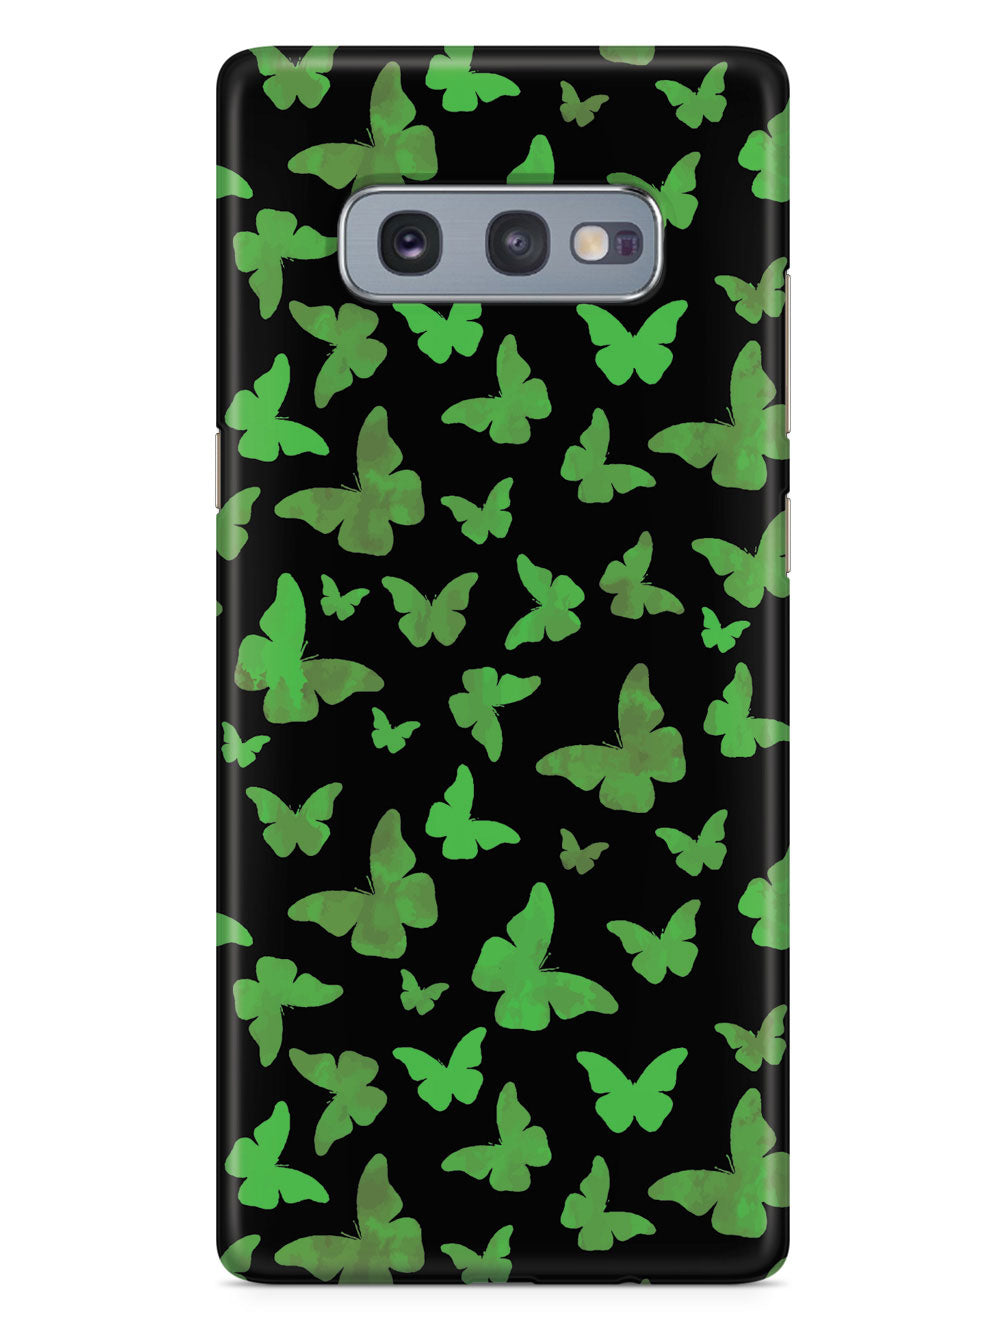 Green Butterflies - Black Case